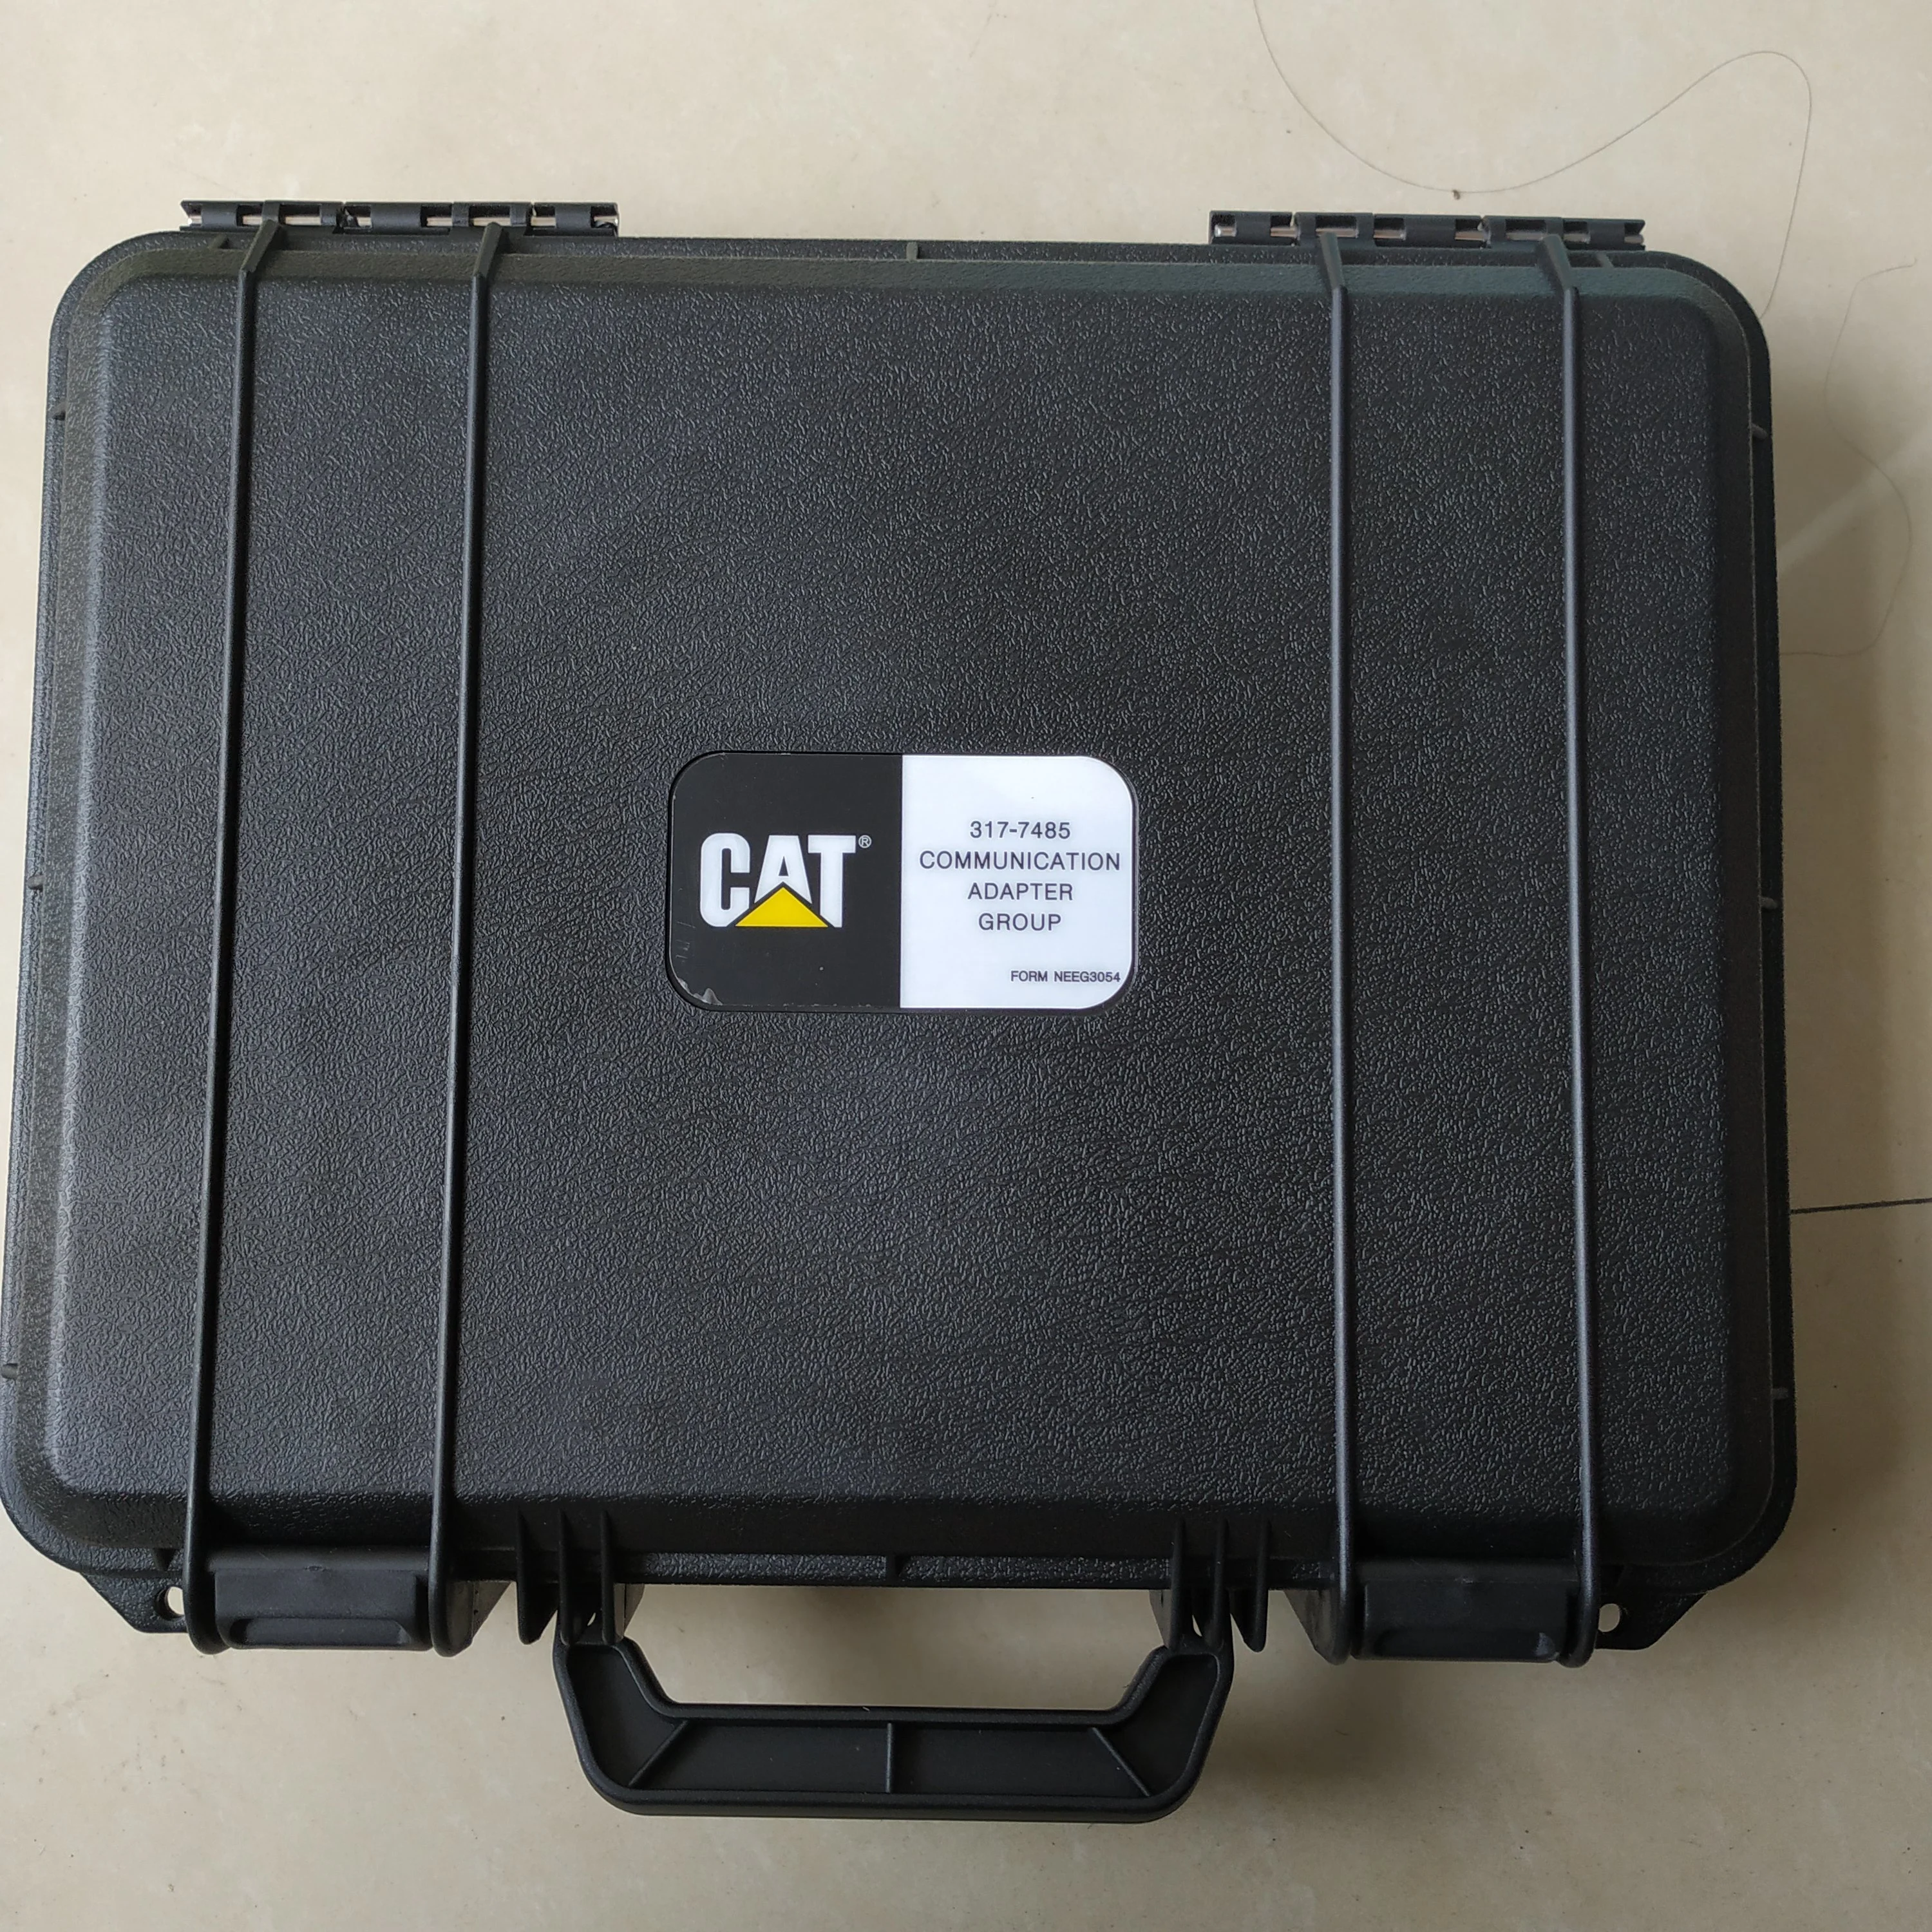 Автоматический диагностический инструмент 317-7485 с планшетом ET3 адаптер 3 III для CAT грузовик Коммуникационный адаптер Электрический инструмент